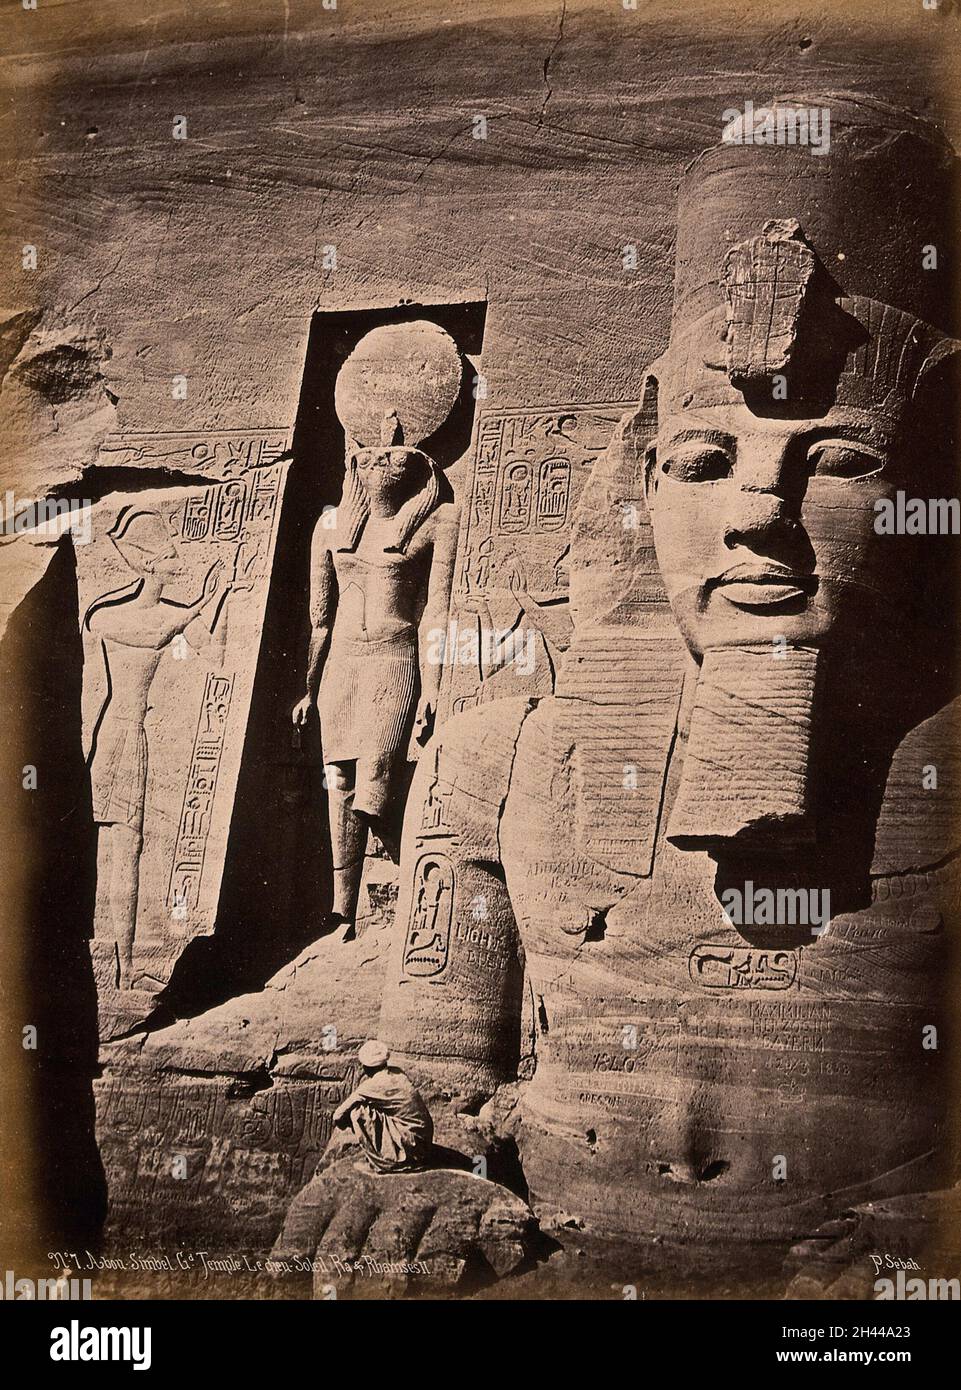 Der Abou Simbel Tempel (der Sonnentempel von Ramesses II), Nubia, Ägypten: Detail der Fassade, die Ramesses II und den sonnengott Ra zeigt; ein Mann hockt im Vordergrund, um Skala zu zeigen. Foto von Pascal Sébah, ca. 1875. Stockfoto